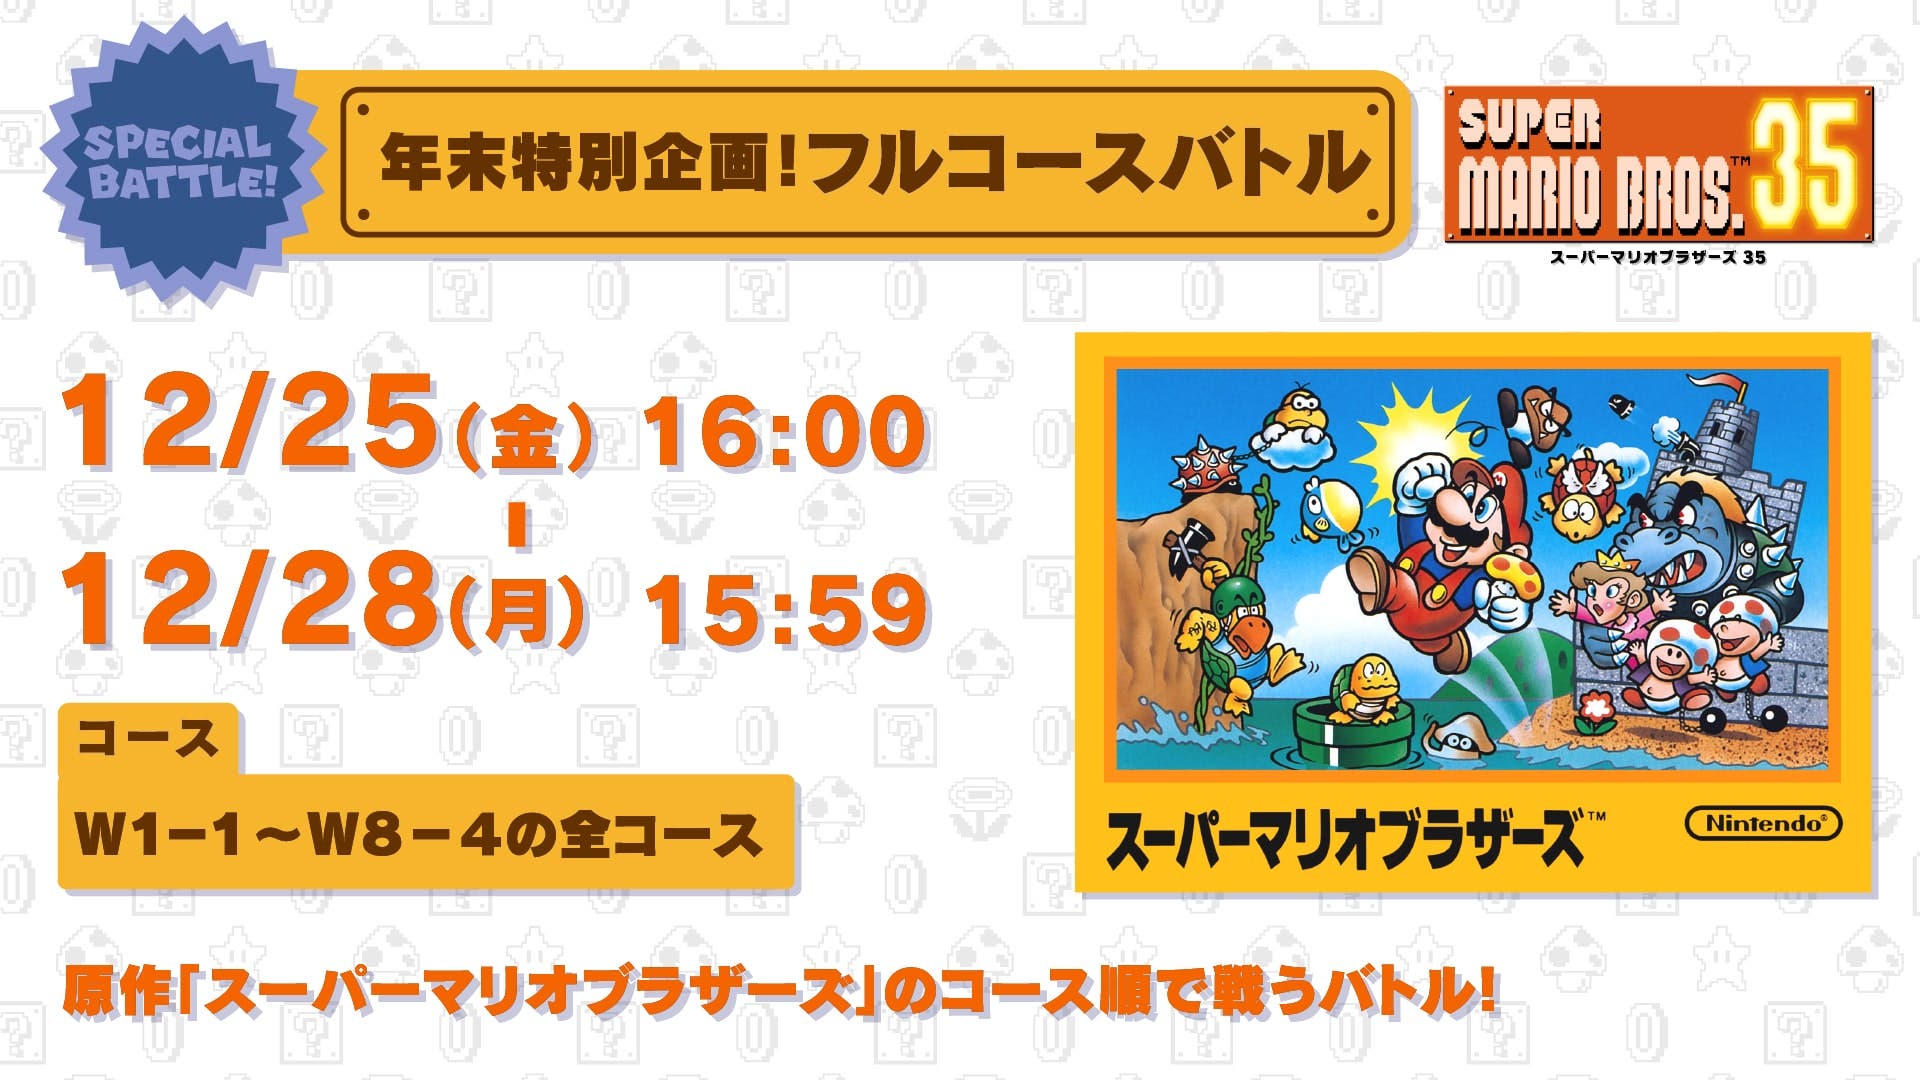 Super Mario Bros. 35 confirma una nueva batalla especial para este viernes